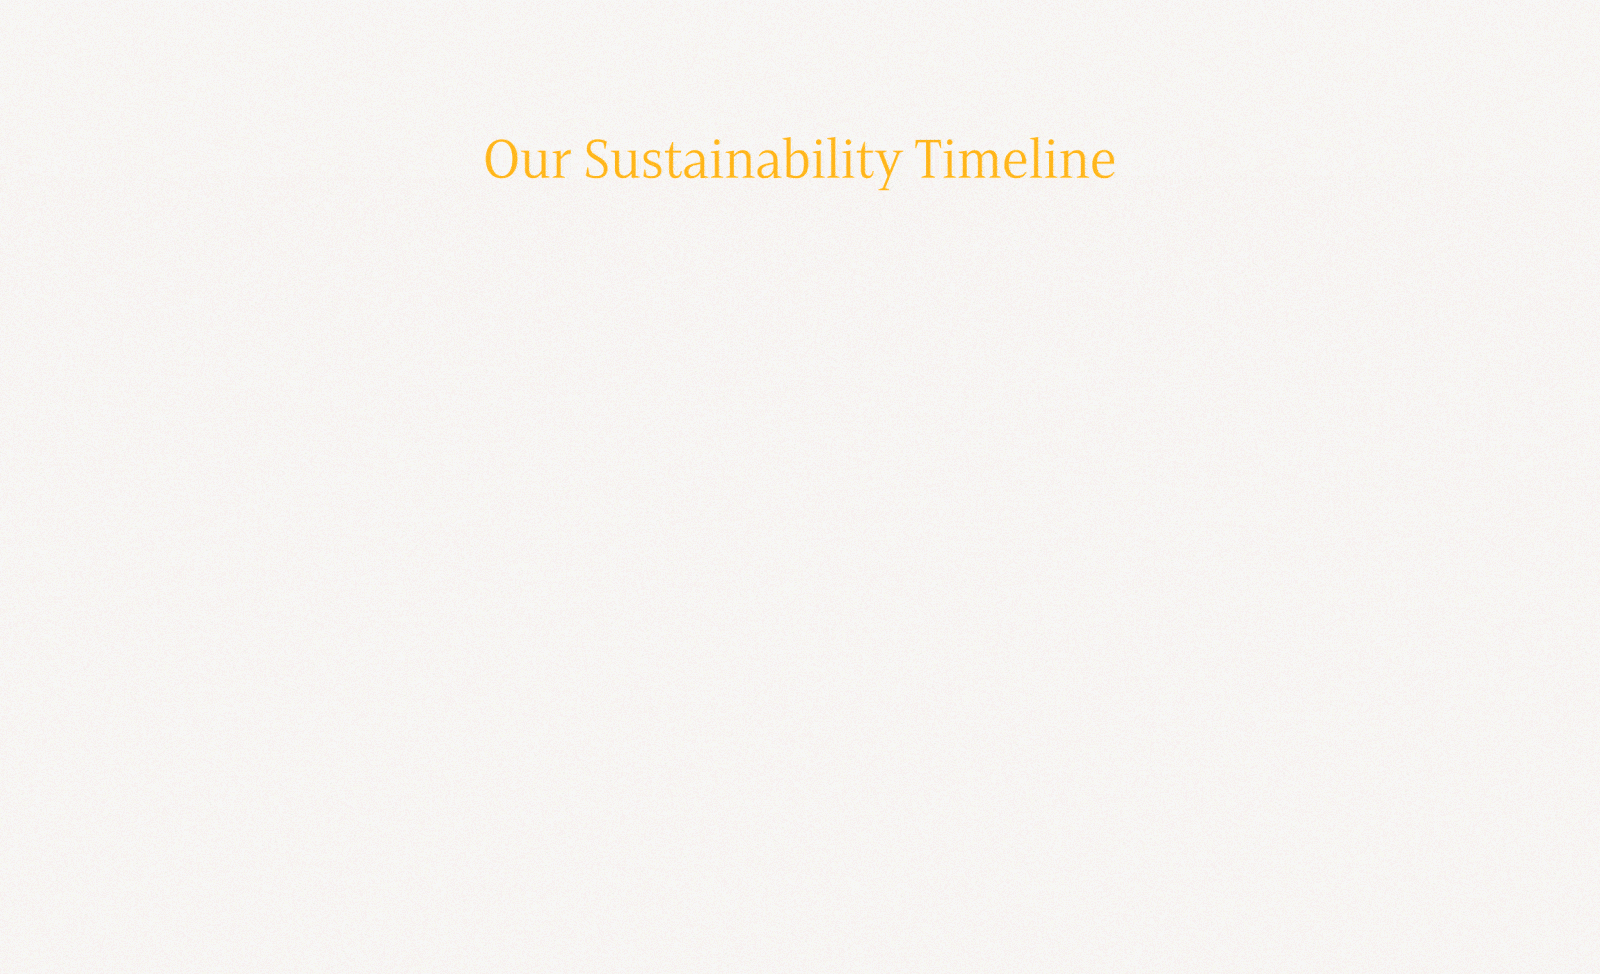 Hallenstein Glasson sustainability timeline